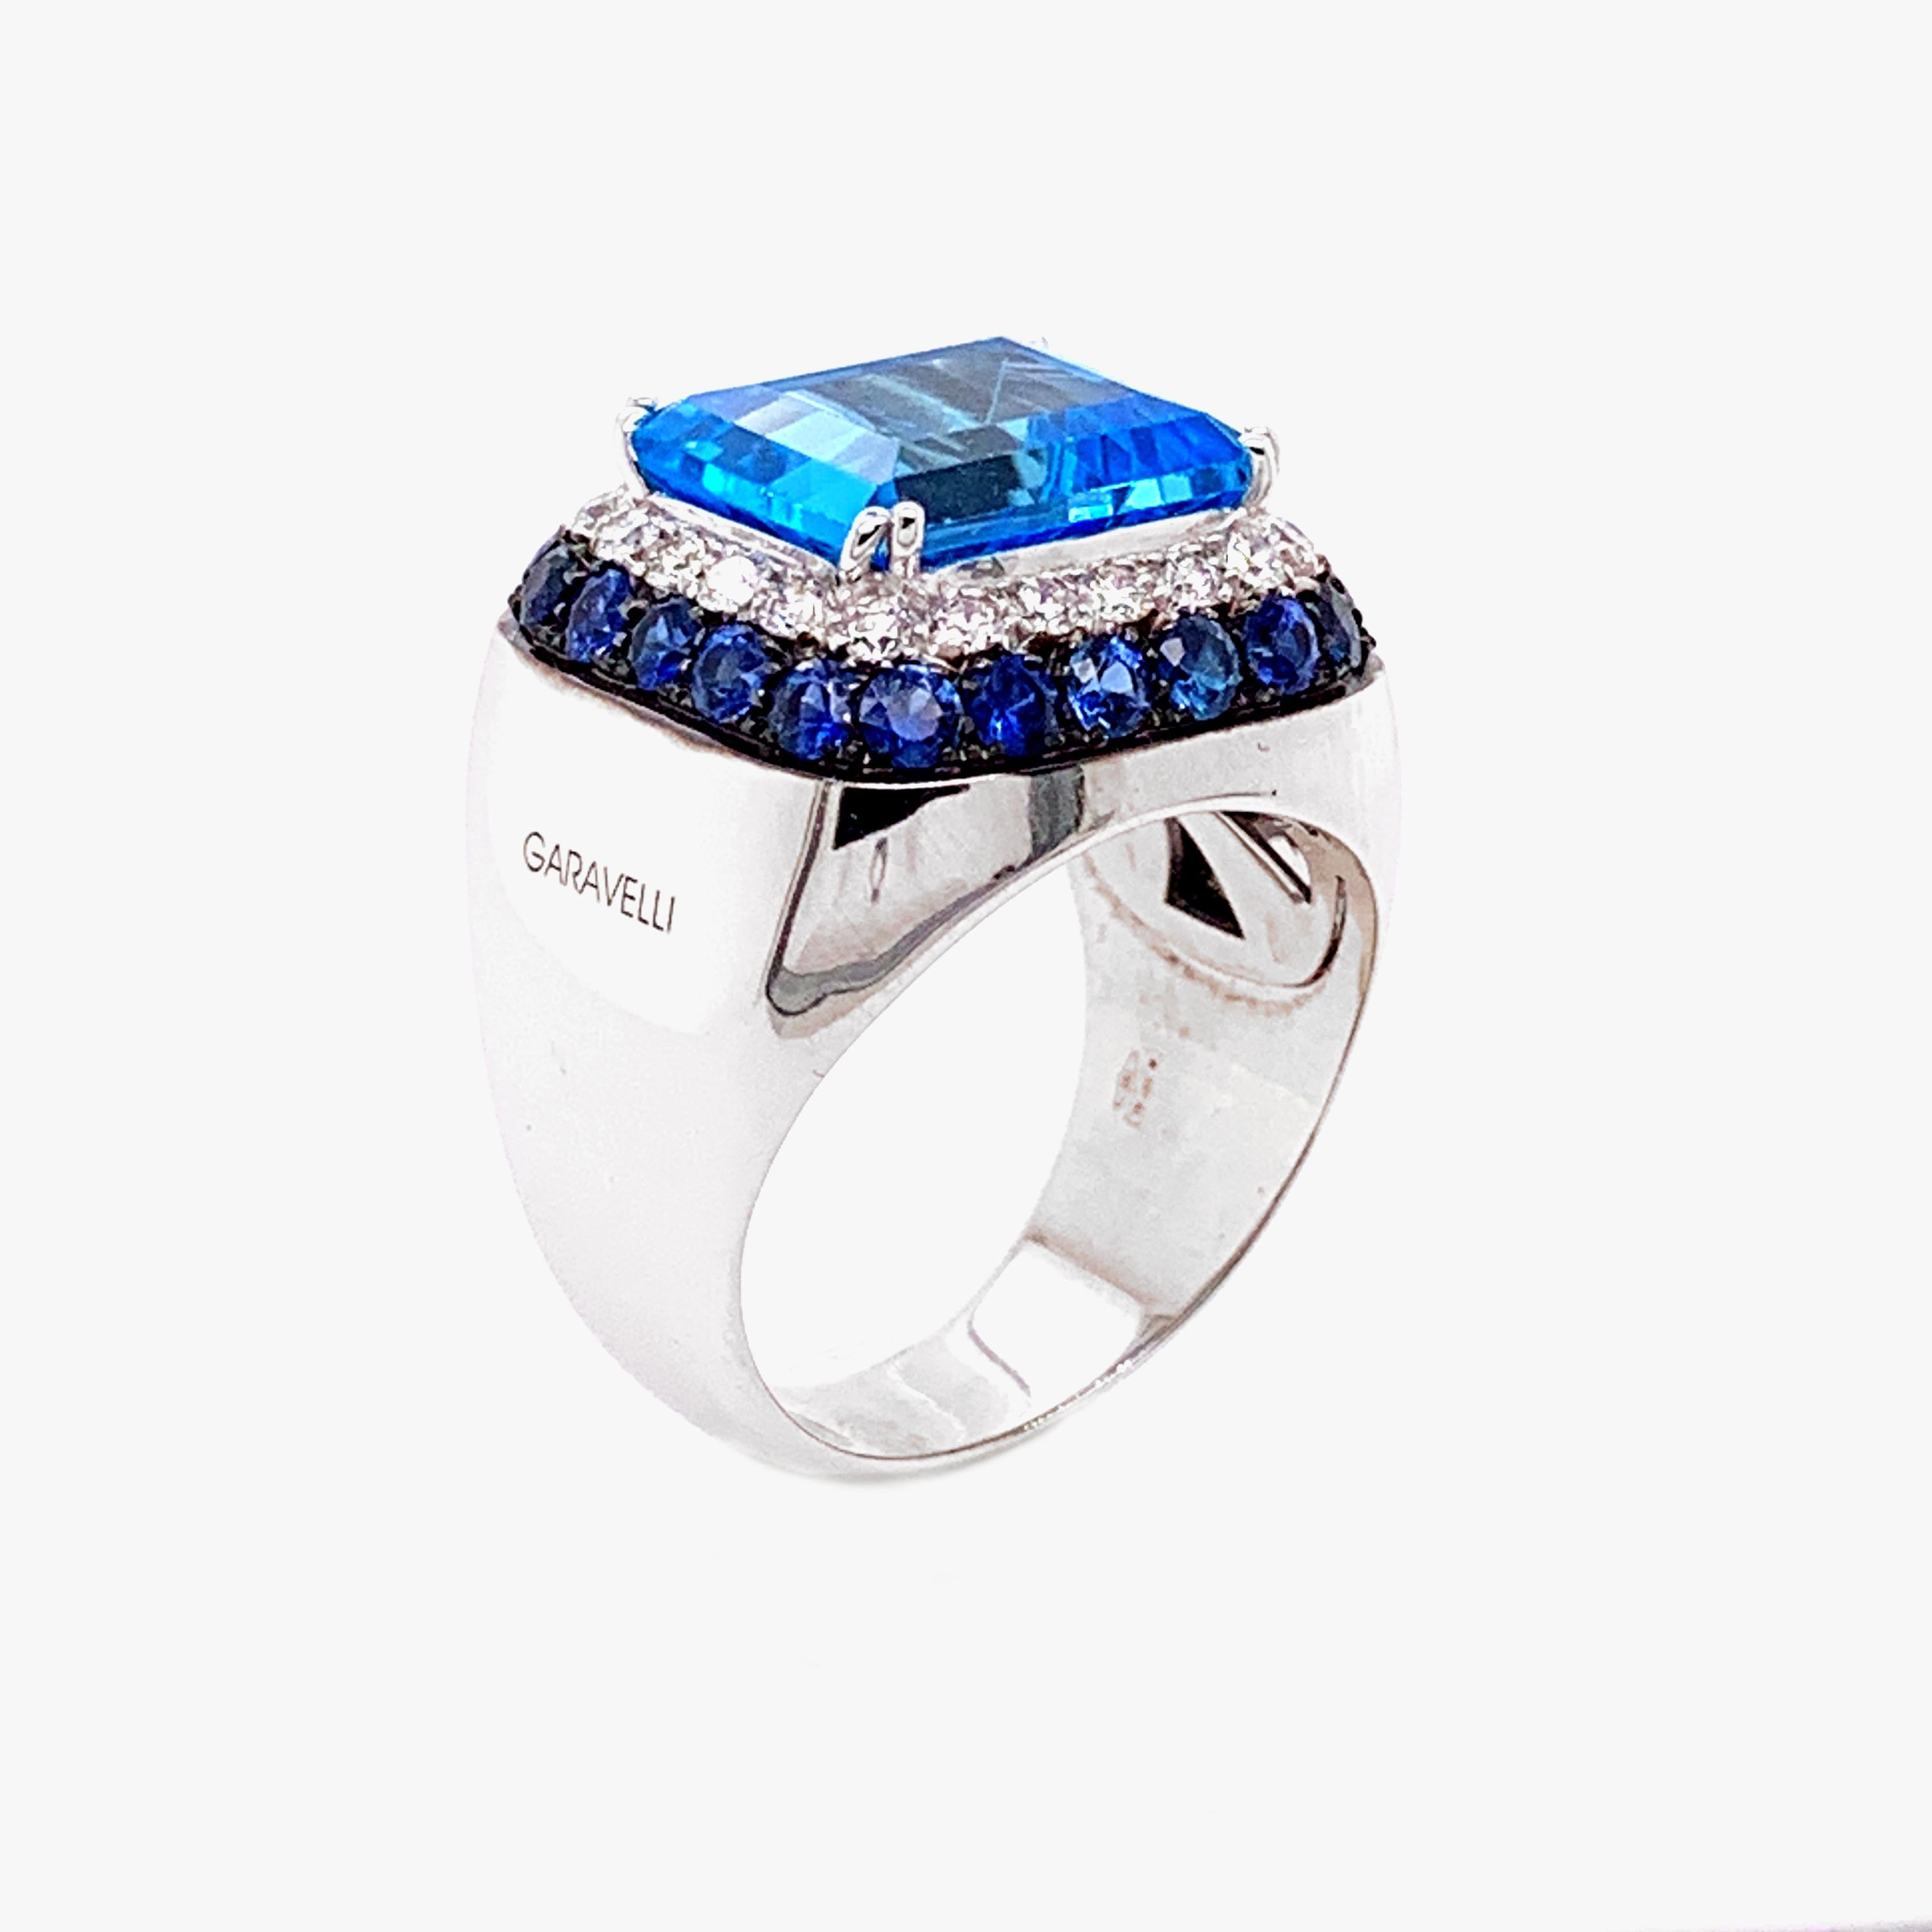 18 Karat White Gold Diamonds, Blue Sapphires and Blue Topaz Ring, finger size 55
18kt White gold gr: 14,90
White Diamonds ct 0.56
Blue Sapphires ct 1.54
Blue Topaz ct 7.70